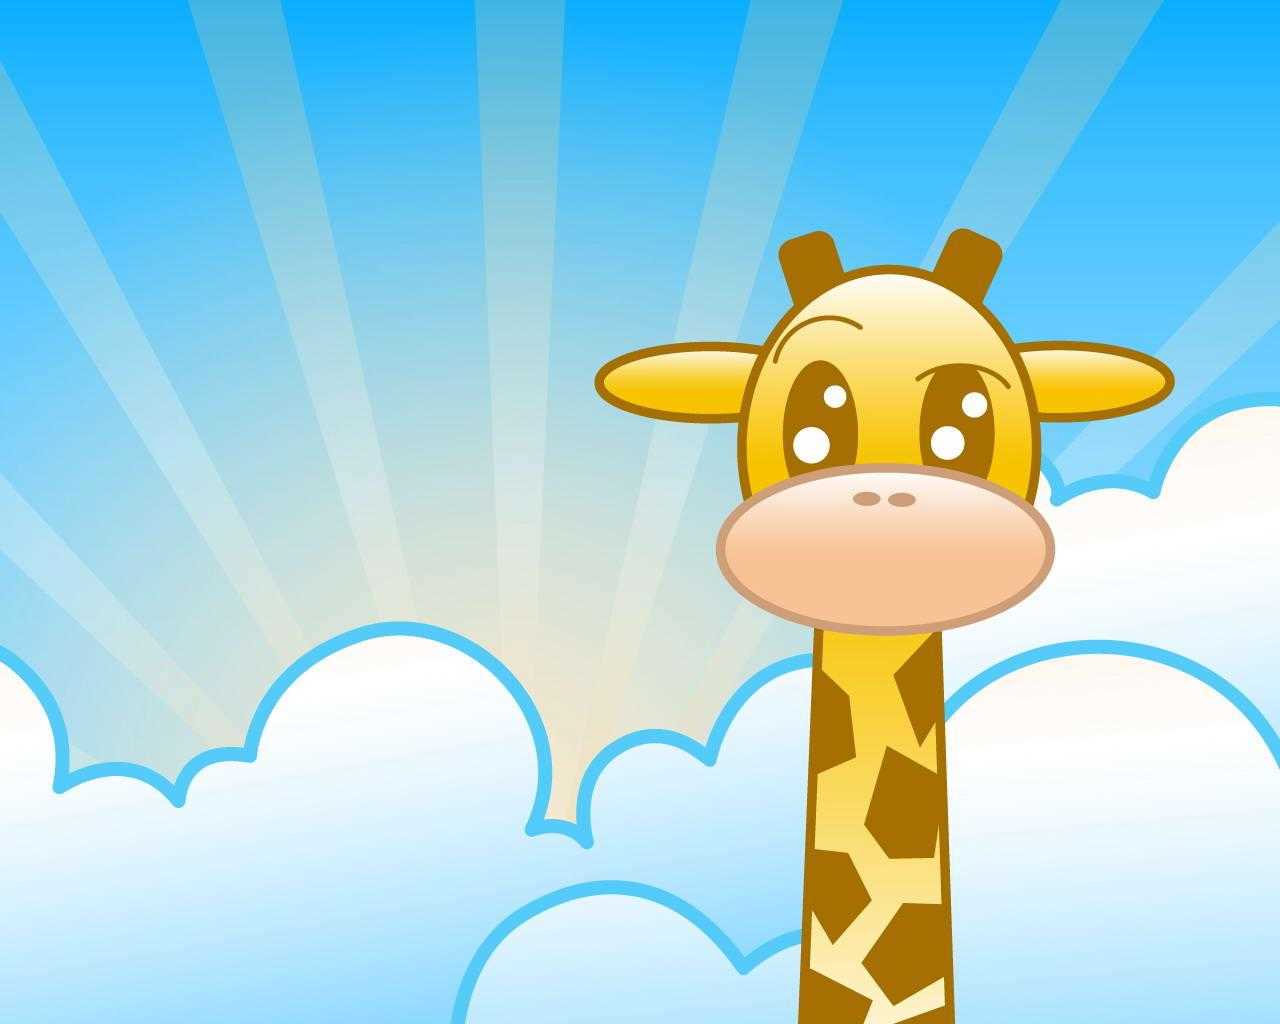 Blue Girly Wallpaper Images Free Download - Giraffe Wallpaper Cartoon - HD Wallpaper 